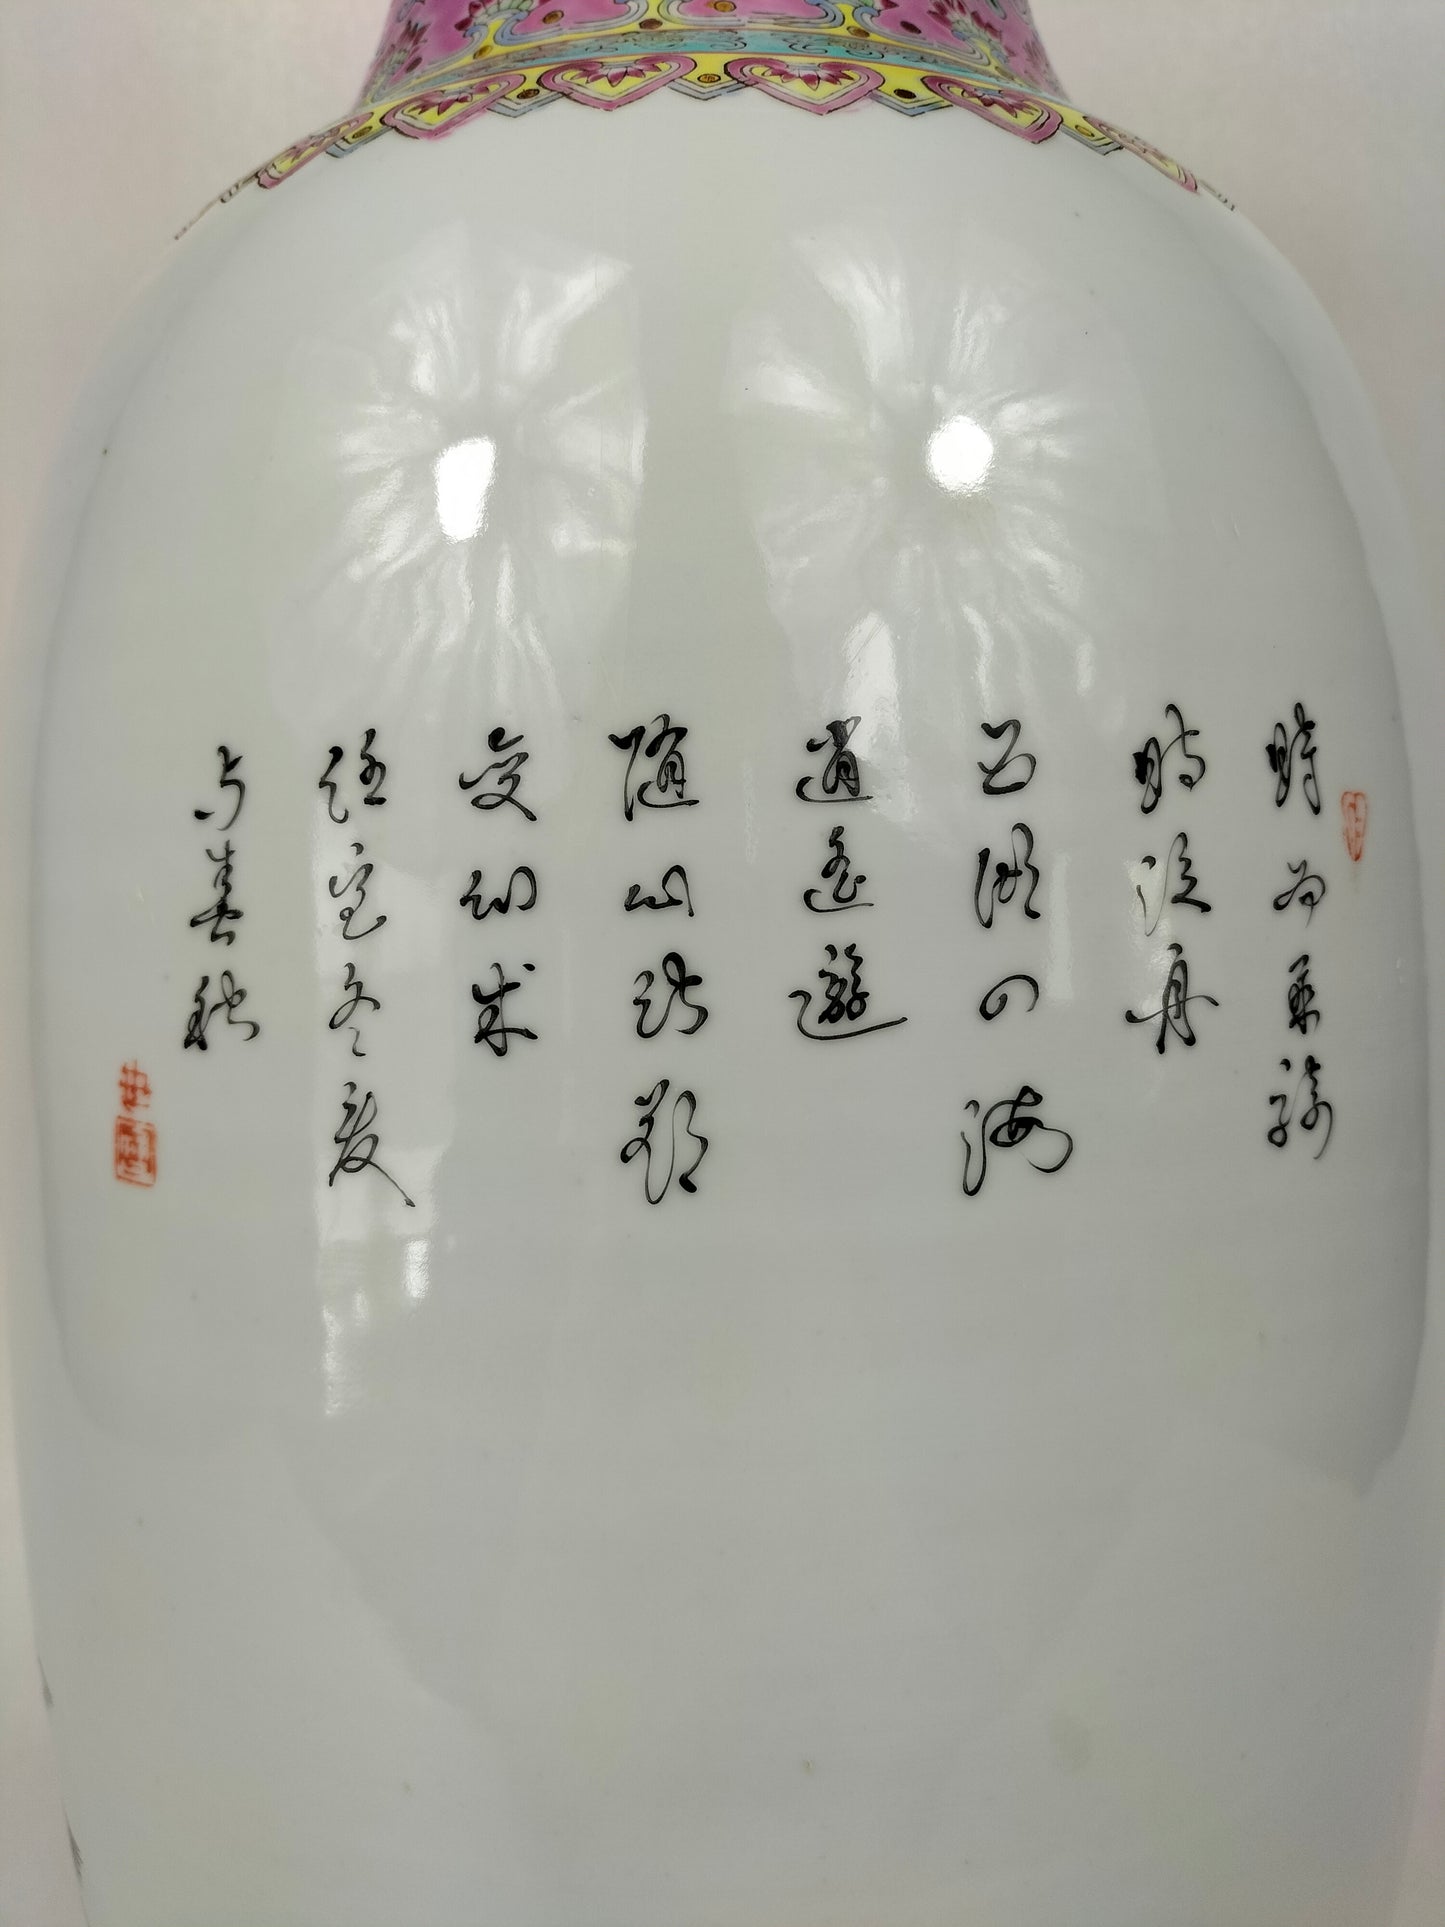 Grand vase en porcelaine de Chine famille rose à décor des 8 Immortels // Jingdezhen - XXe siècle